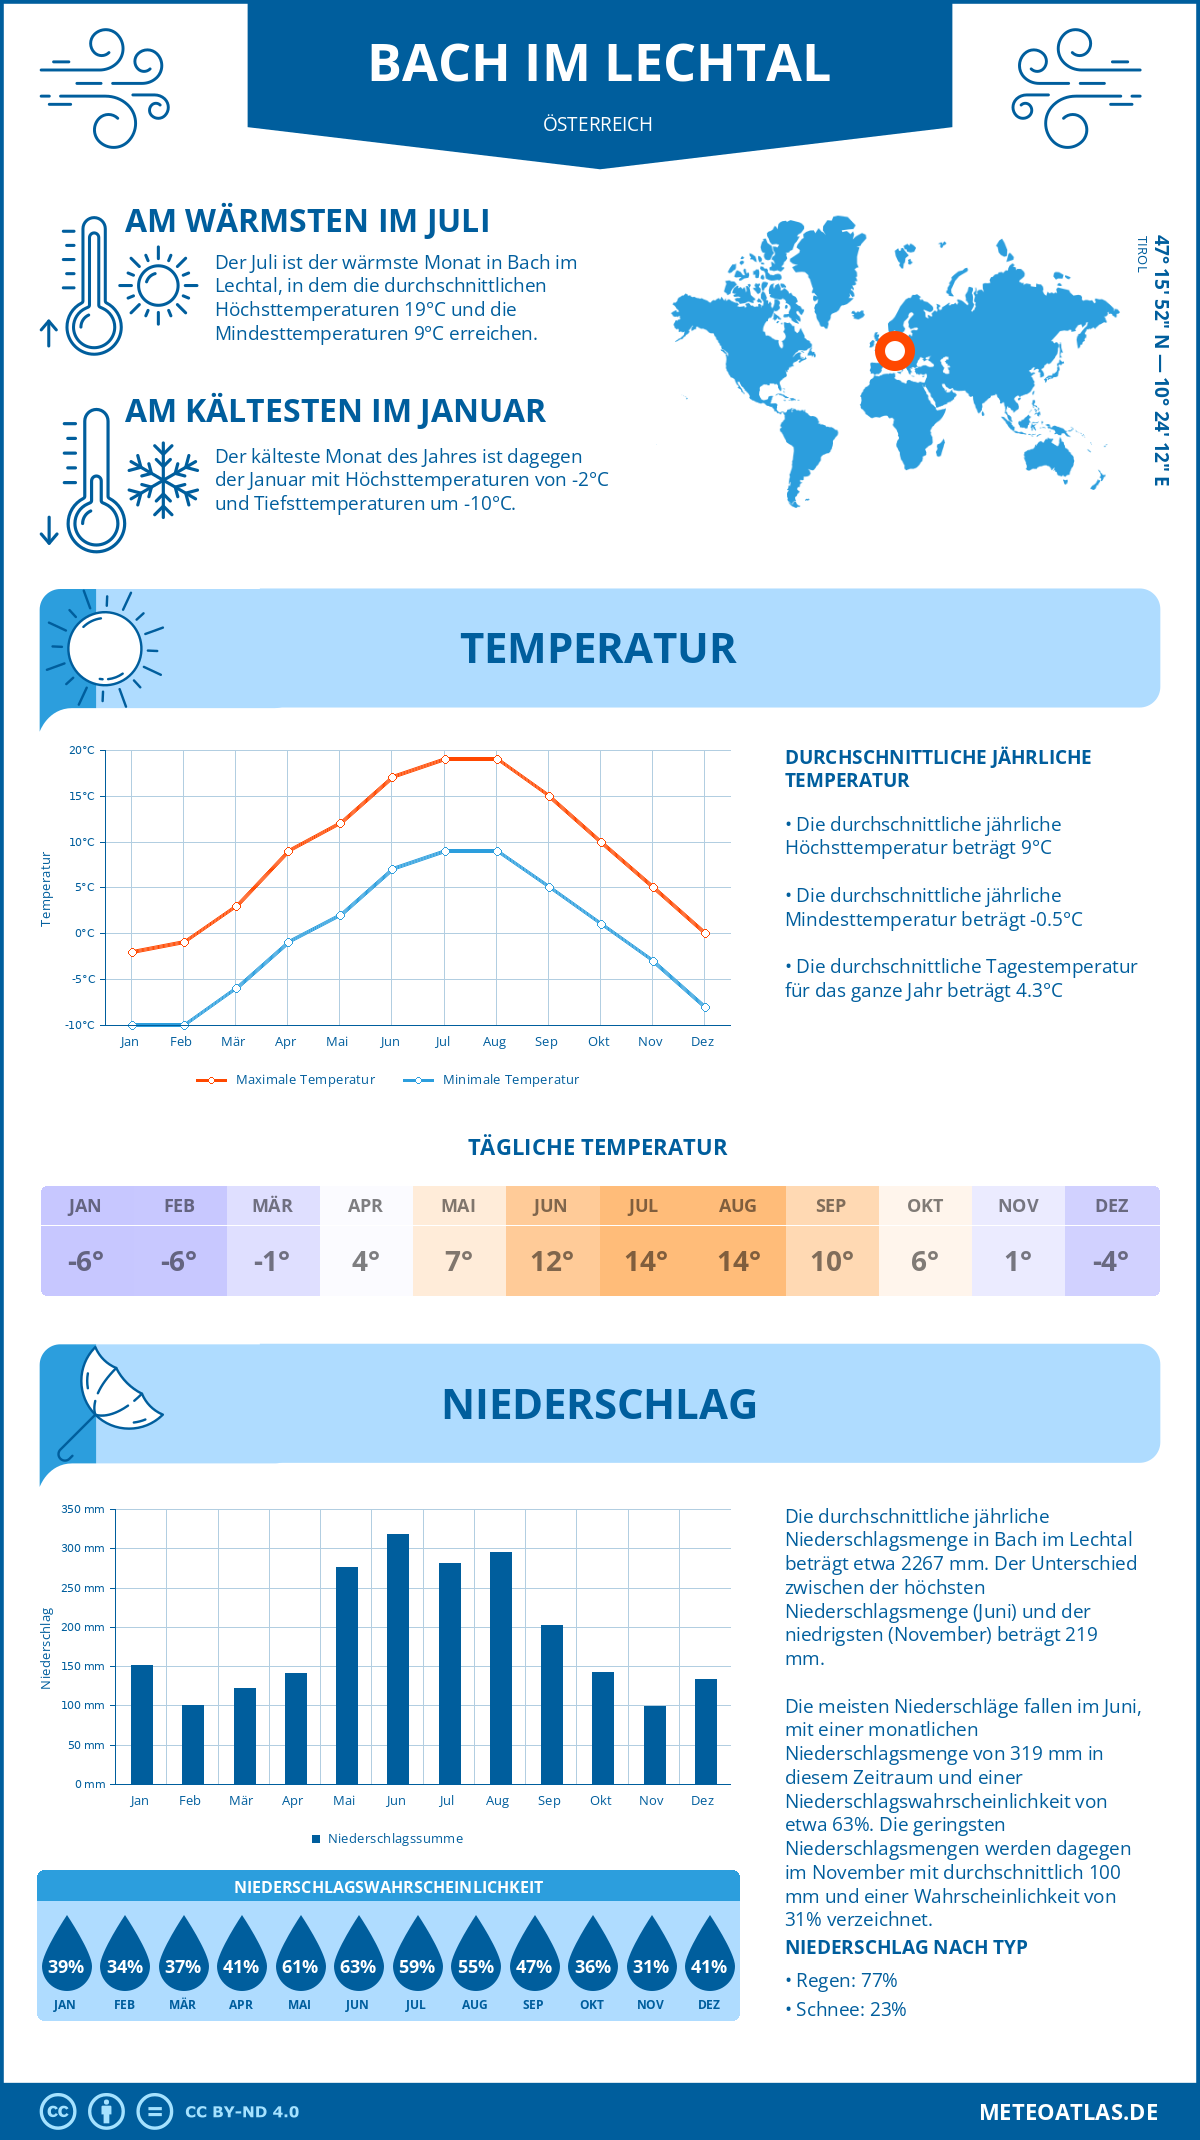 Wetter Bach im Lechtal (Österreich) - Temperatur und Niederschlag